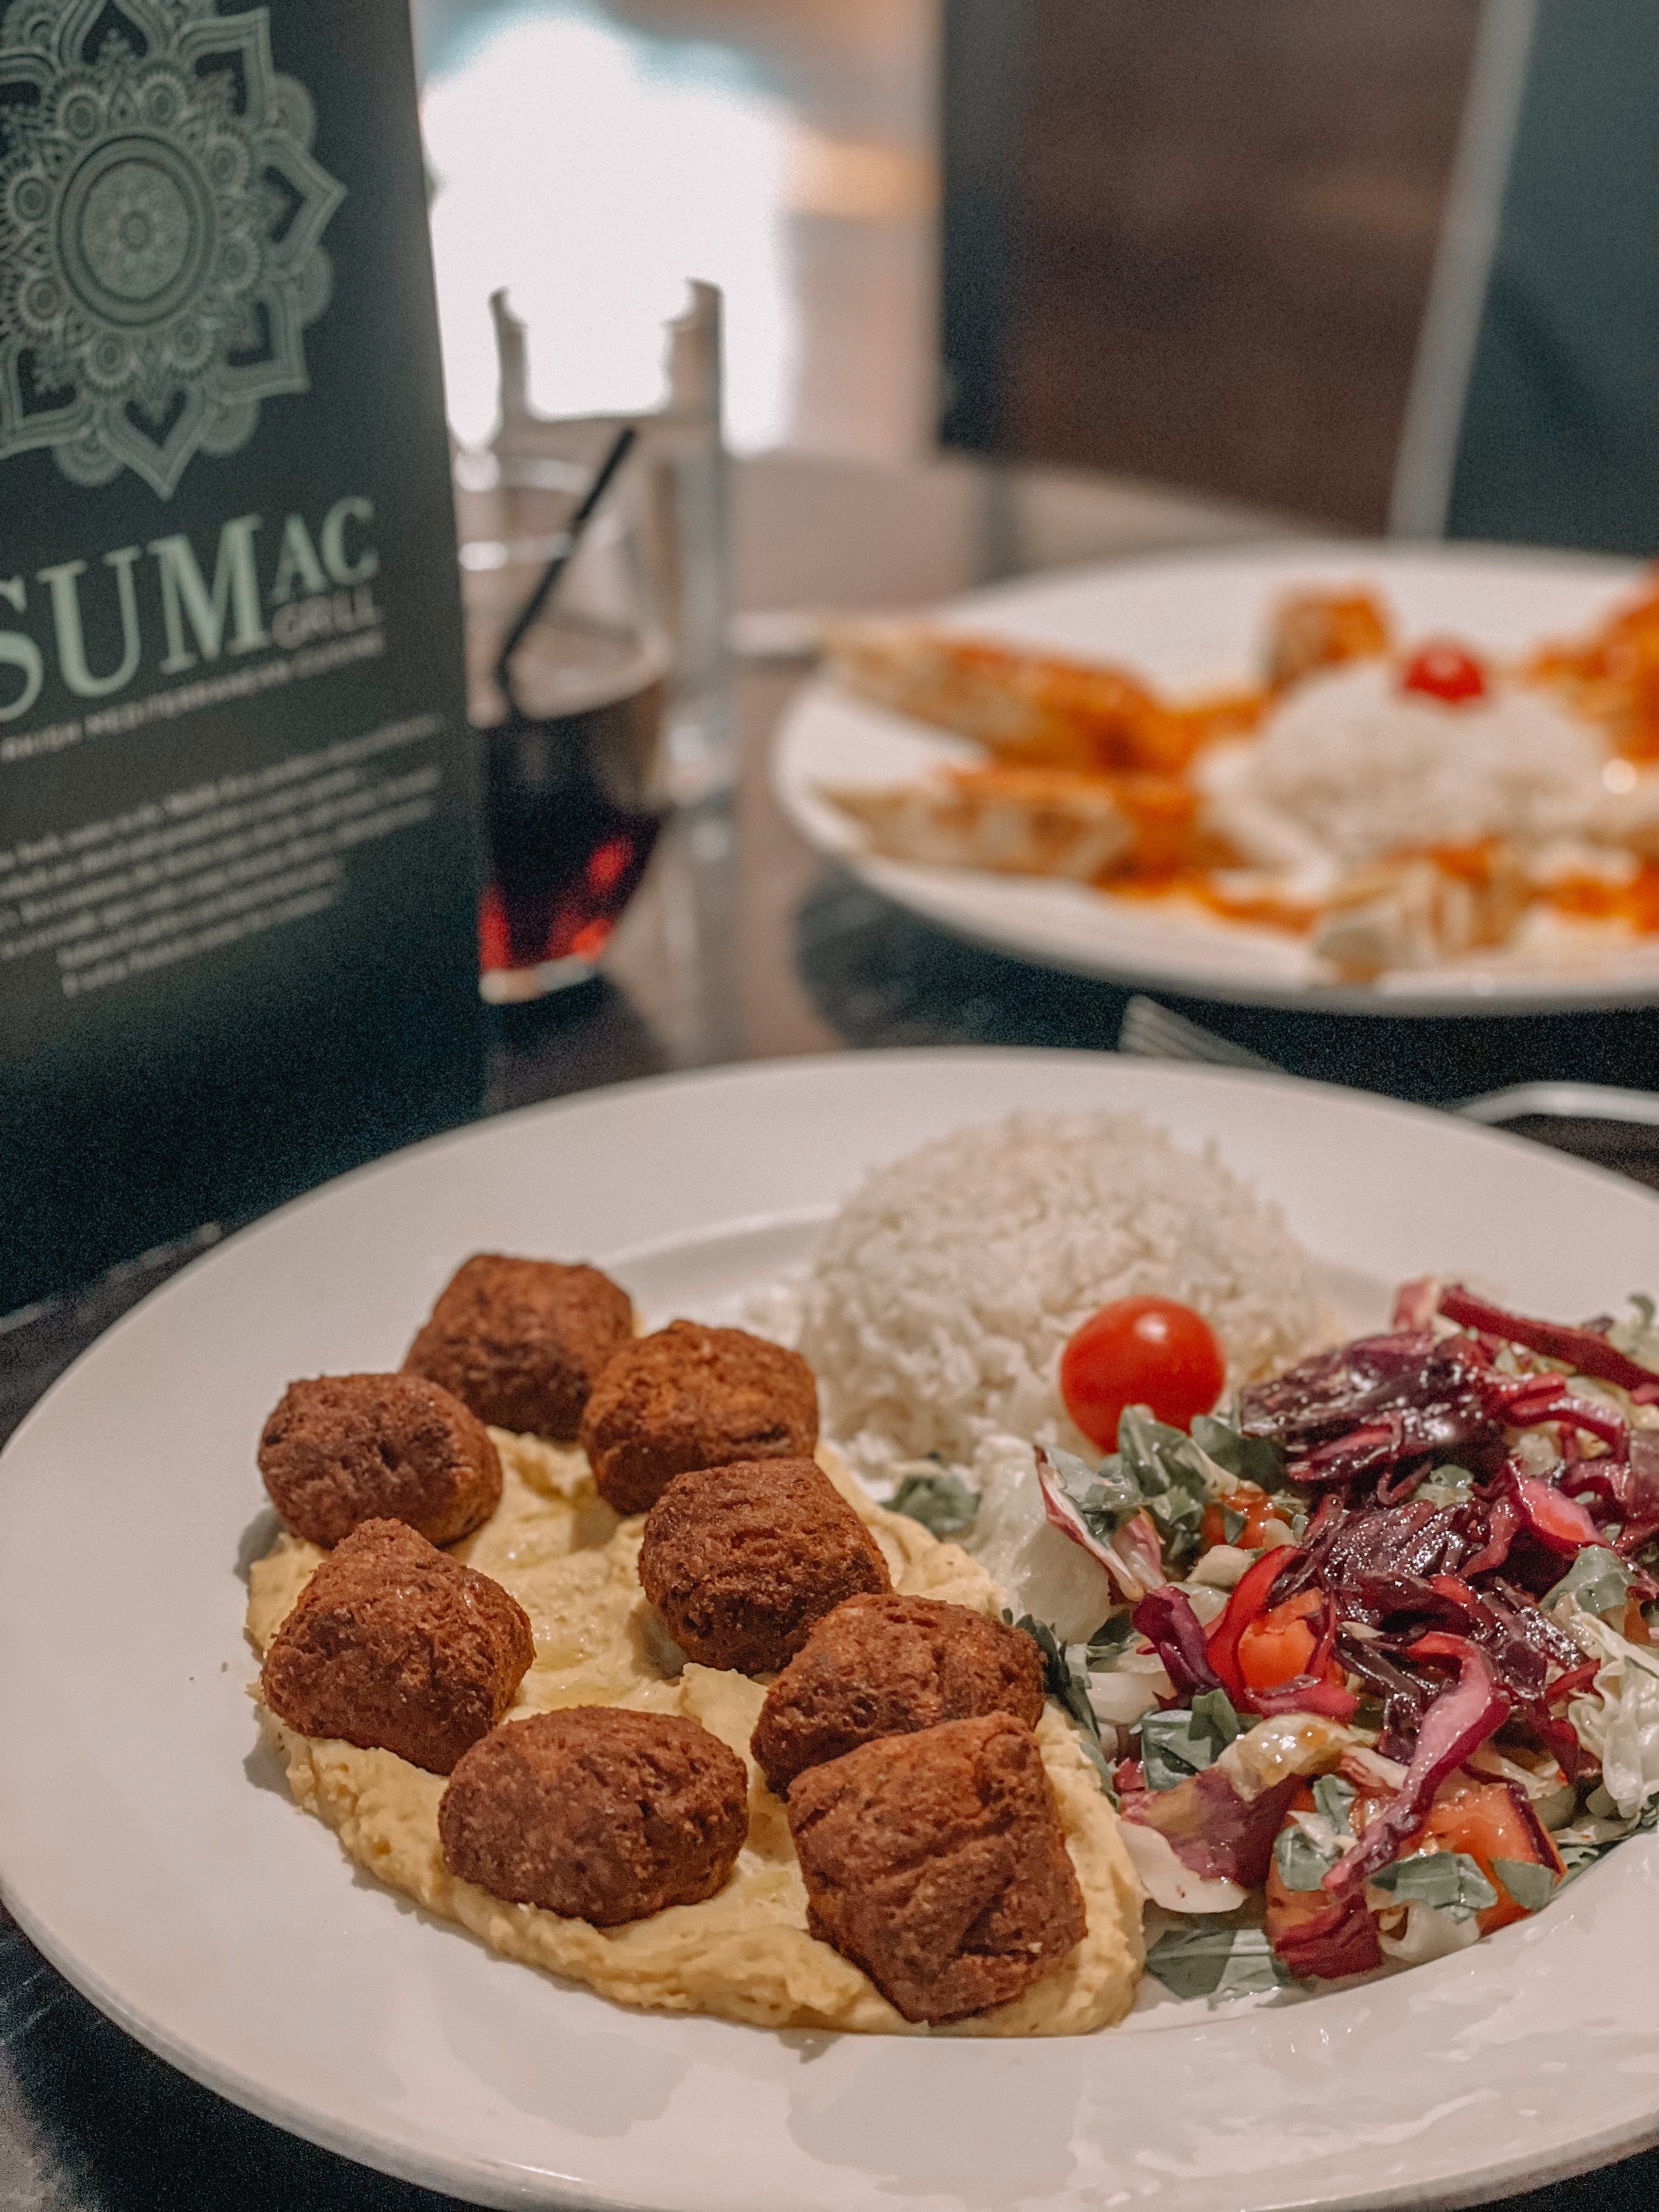 Sumac Grill Turkish Mediterranean Restaurant